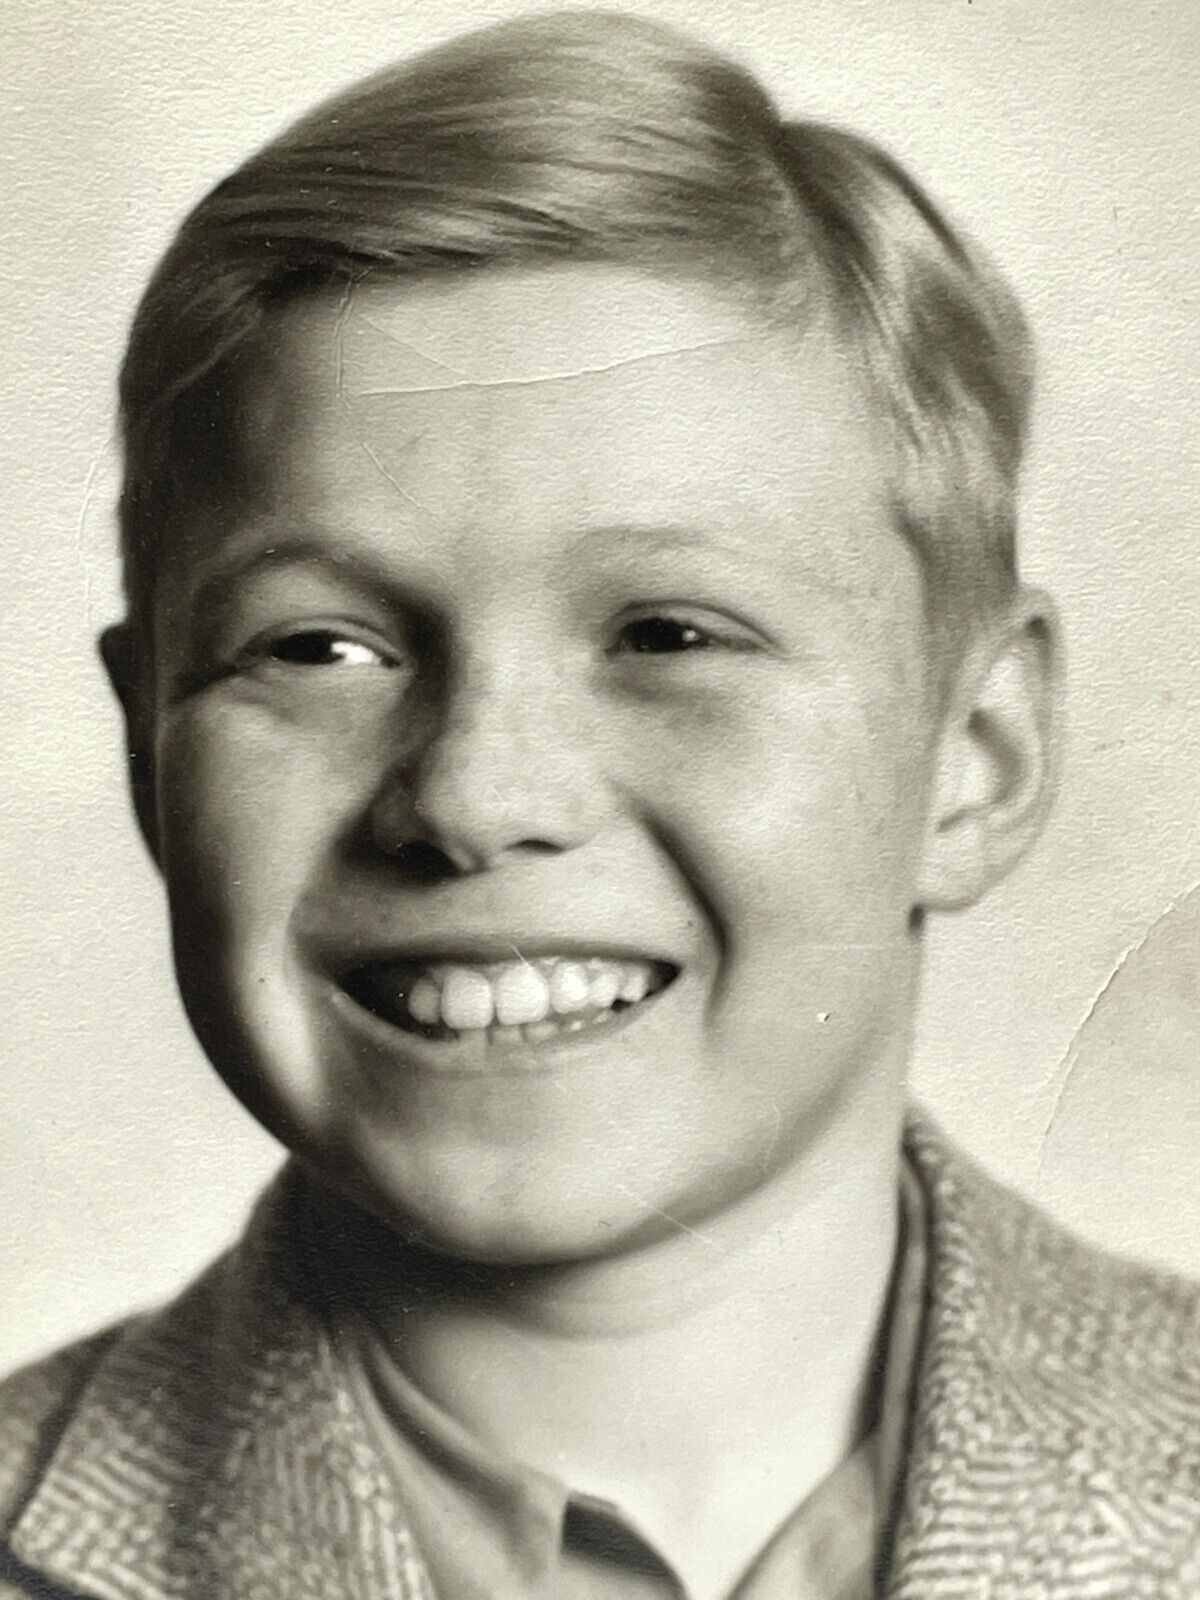 UE Photograph Young Man 1950\'s Portrait